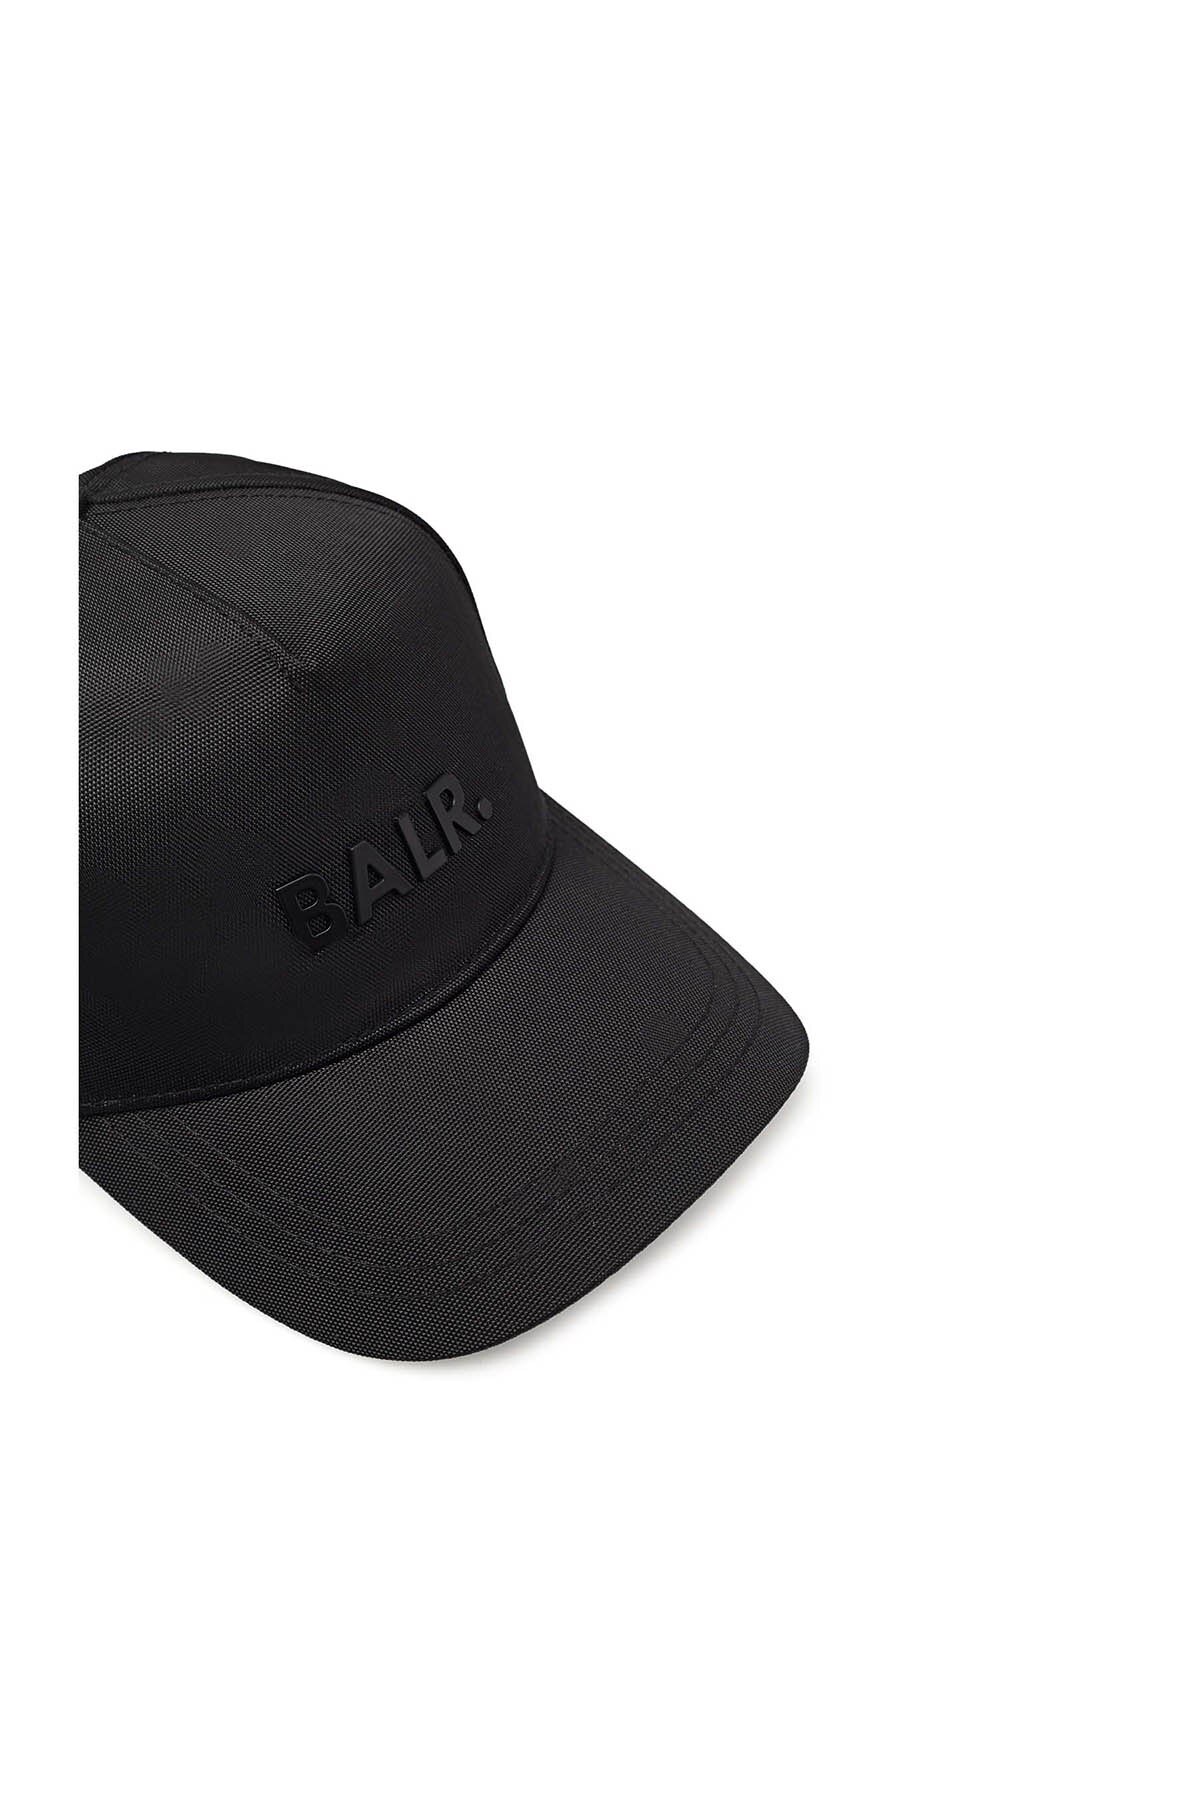 Balr Pamuklu Marka Logolu Erkek Şapka B10014 B SİYAH